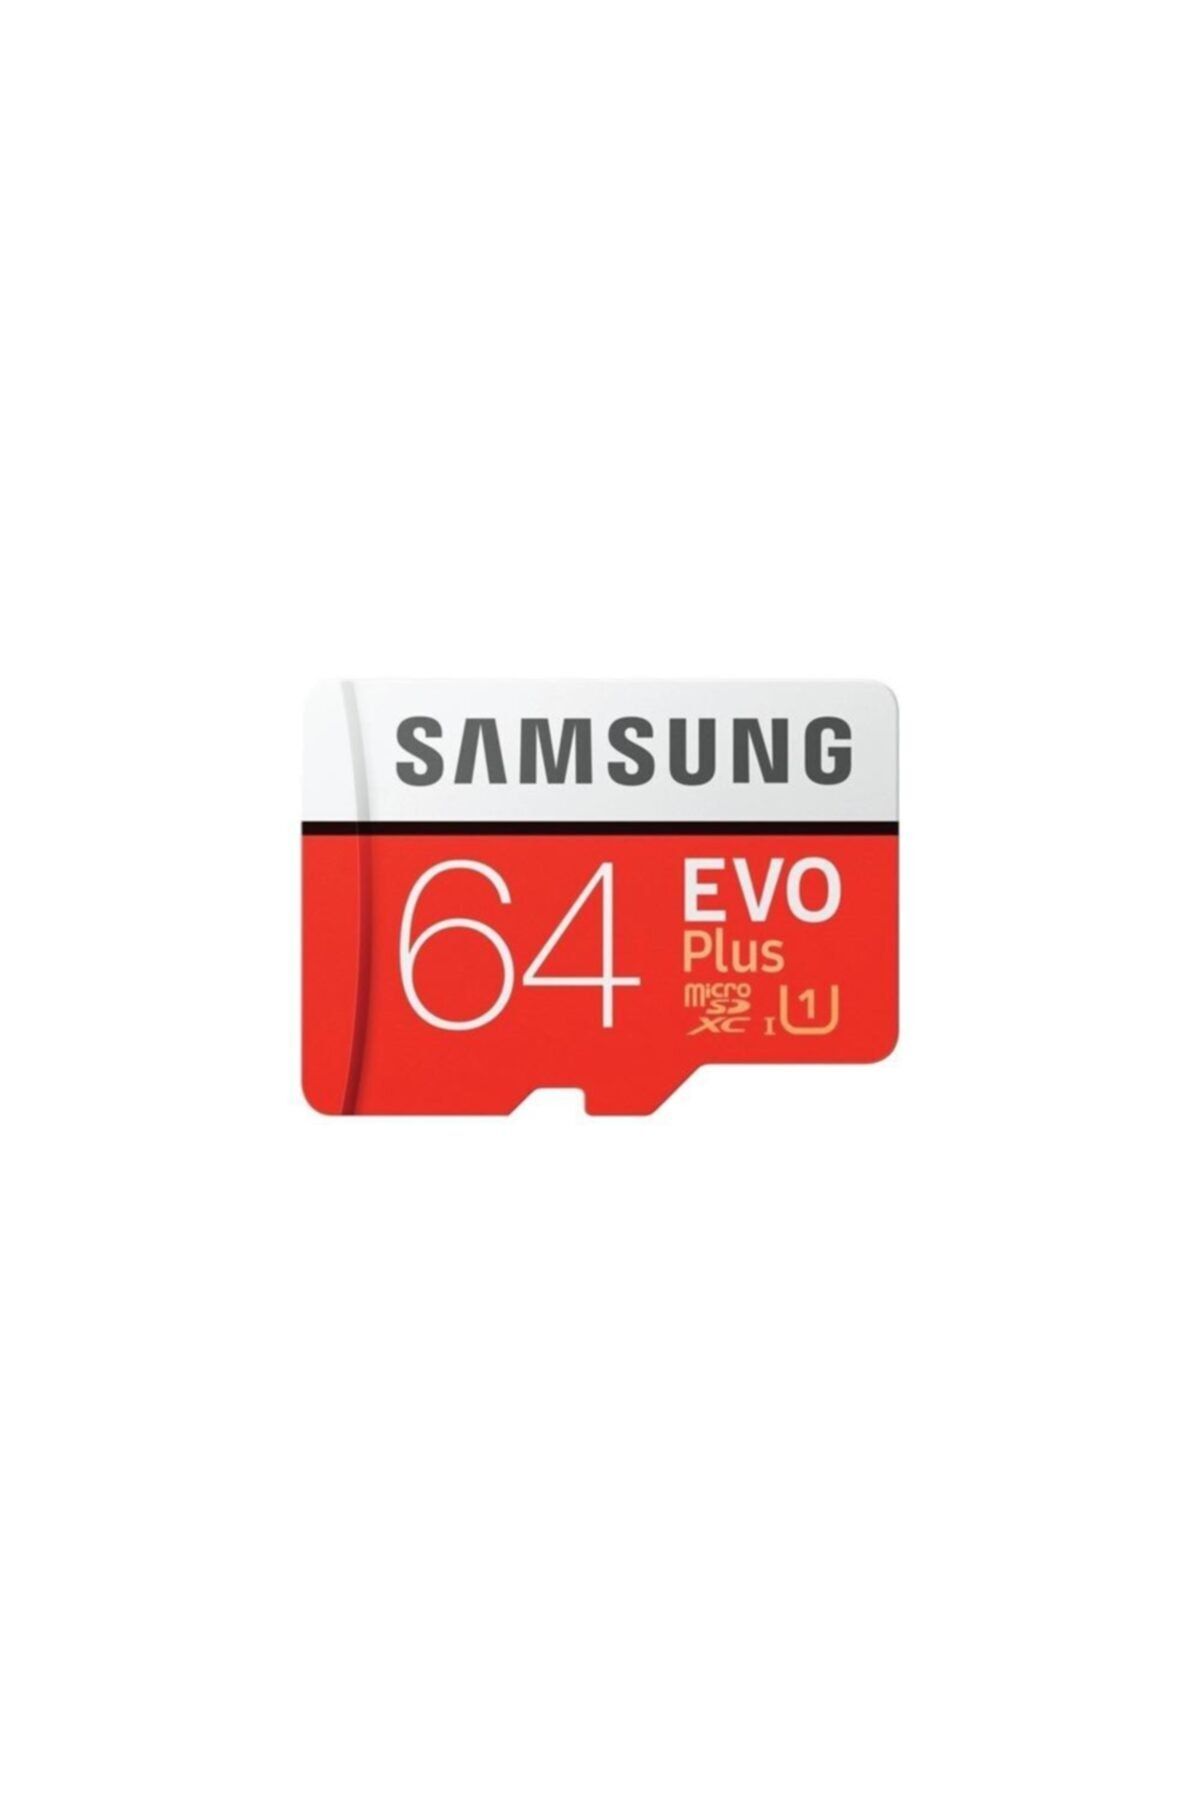 Samsung Evo Plus 64gb Microsd Hafıza Kartı